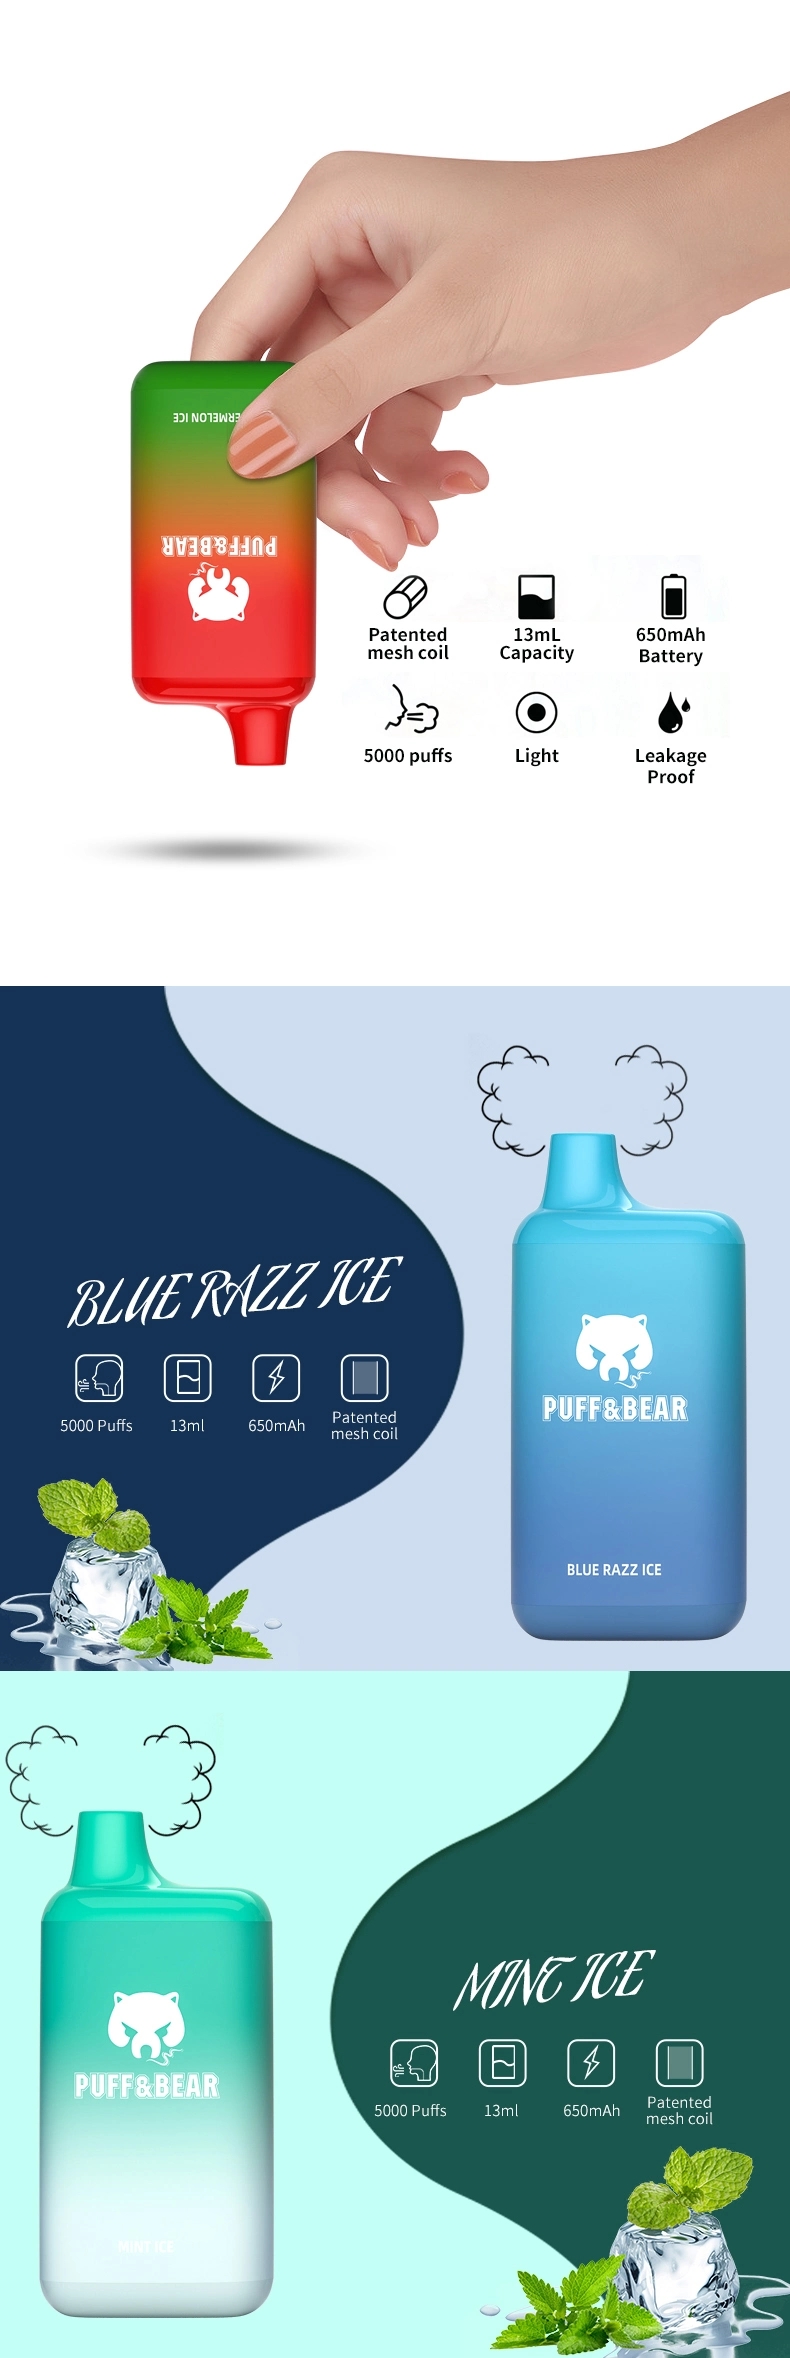 China-Shenzhen-Vape-E-Rokok-Puffandbear-New-Vaporizer-Pen-Puff-Bar-5000-Puffs-Fruit-Juice-Flavor-Disposable-Vape.webp (9)